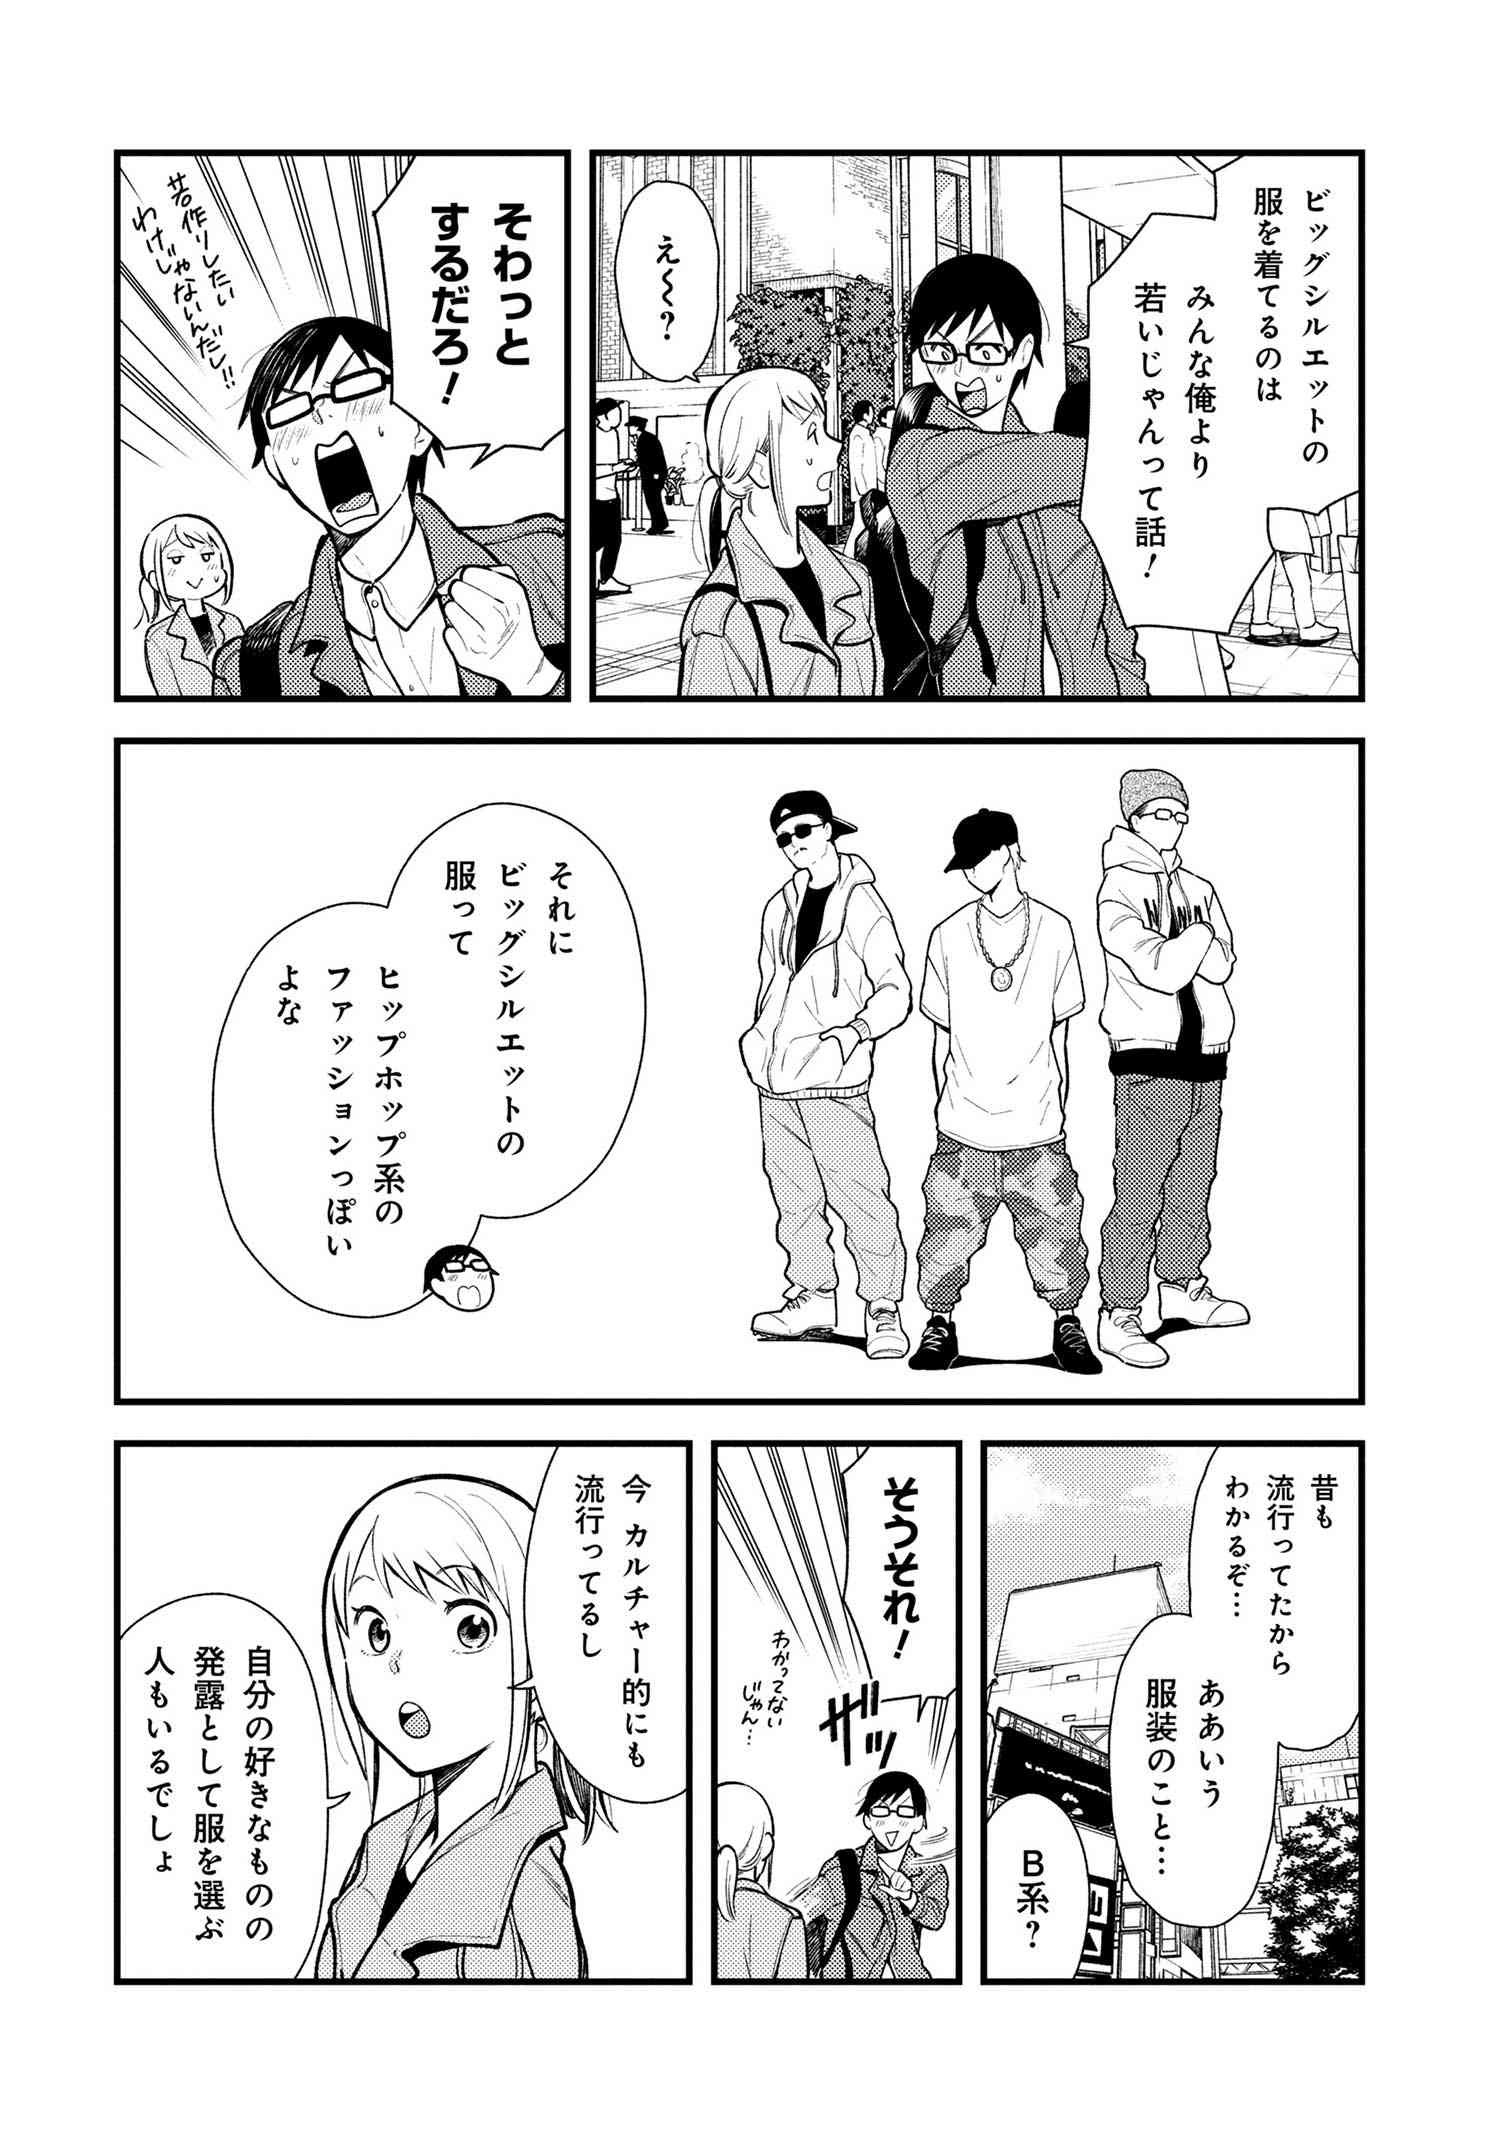 Fuku o Kiru Nara Konna Fuu ni - 服を着るならこんなふうに - Chapter 37 - Page 2